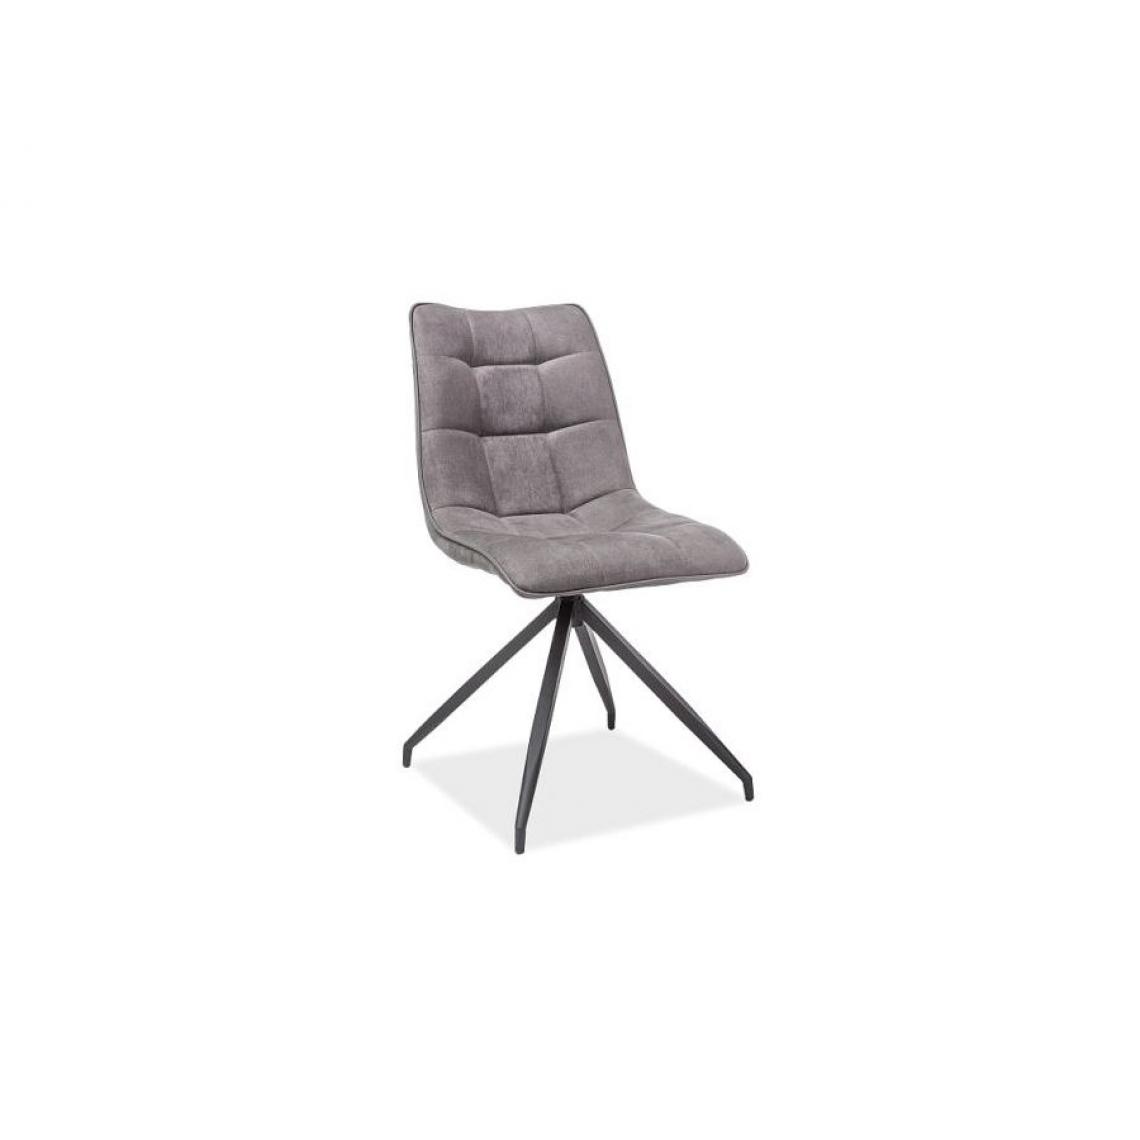 Hucoco - OLAH | Chaise design style scandinave | 89x47x44 cm | Tissu souple | Coutures décoratives | Chaise salon bureau salle à manger - Gris - Chaises